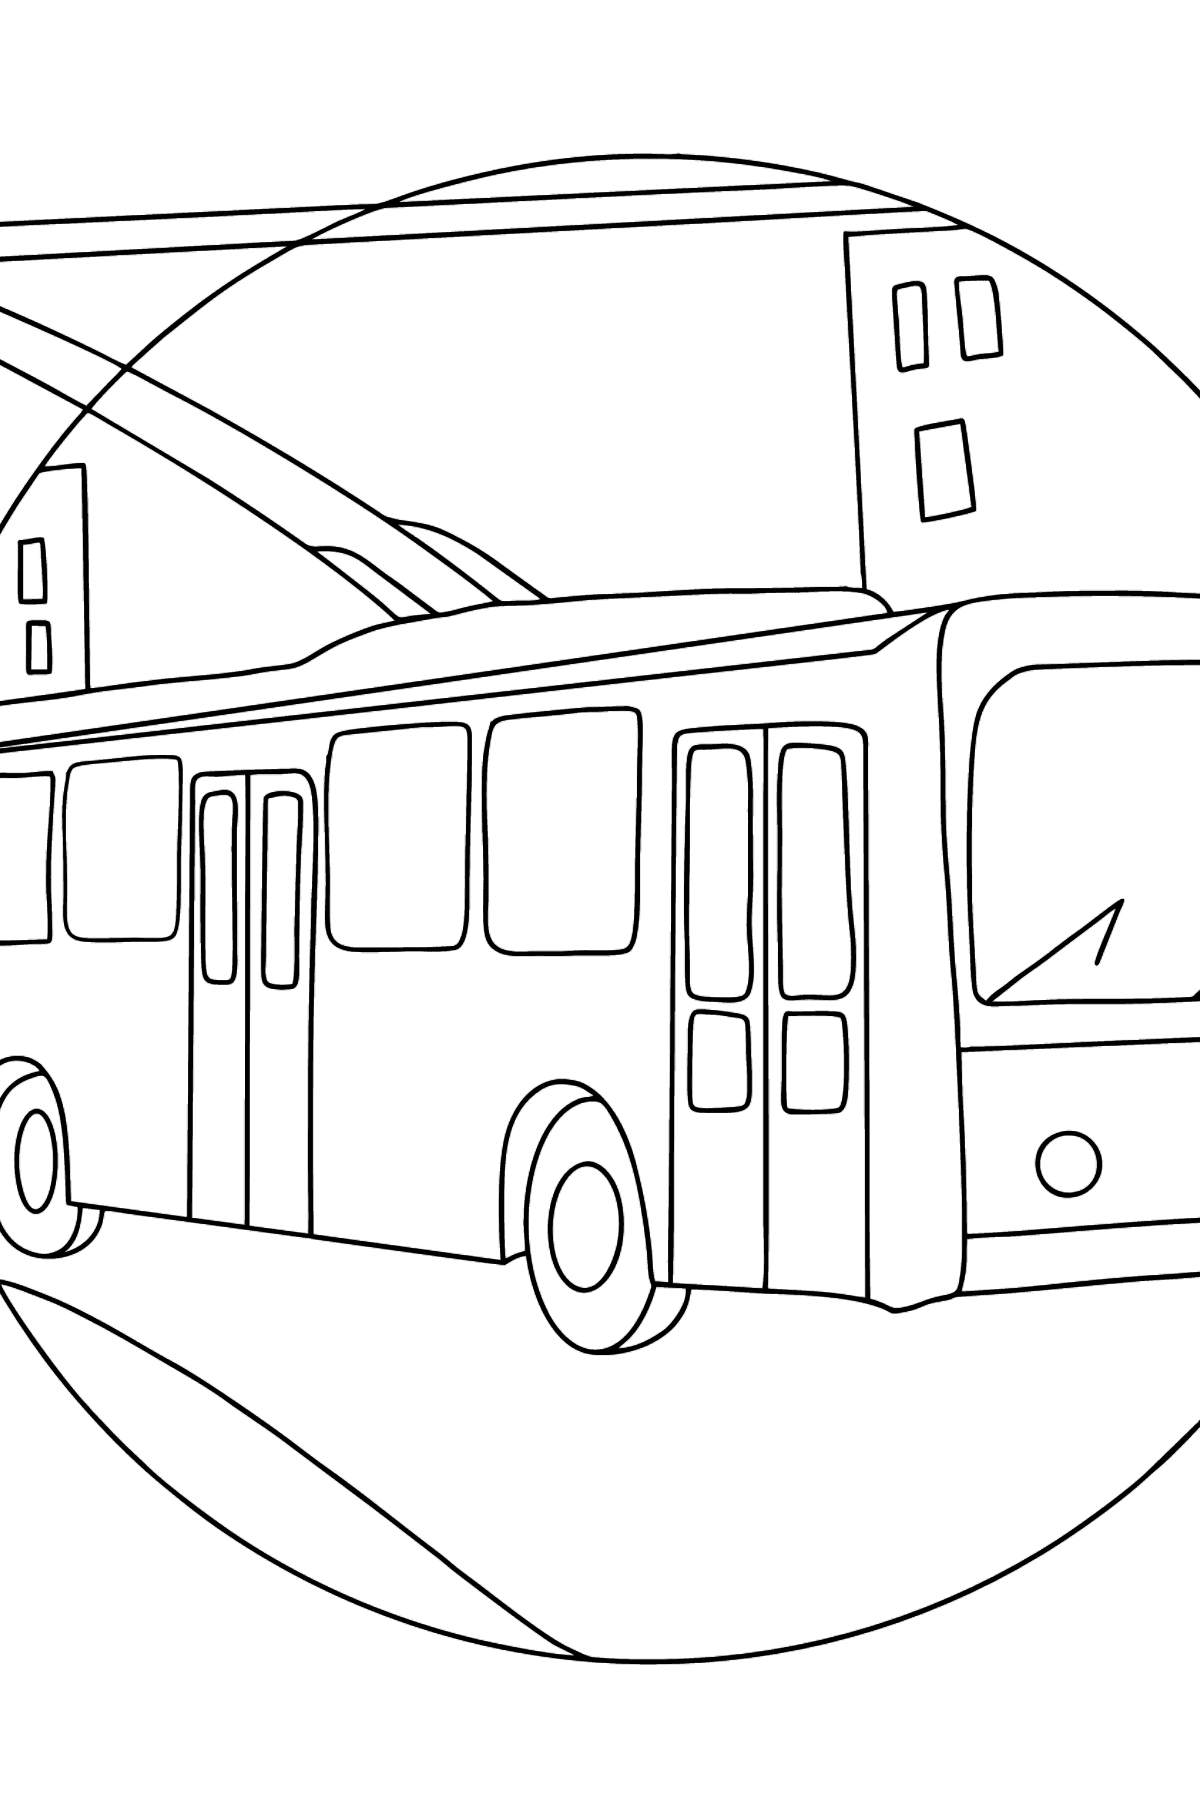 Раскраска Троллейбус - Картинки для Детей